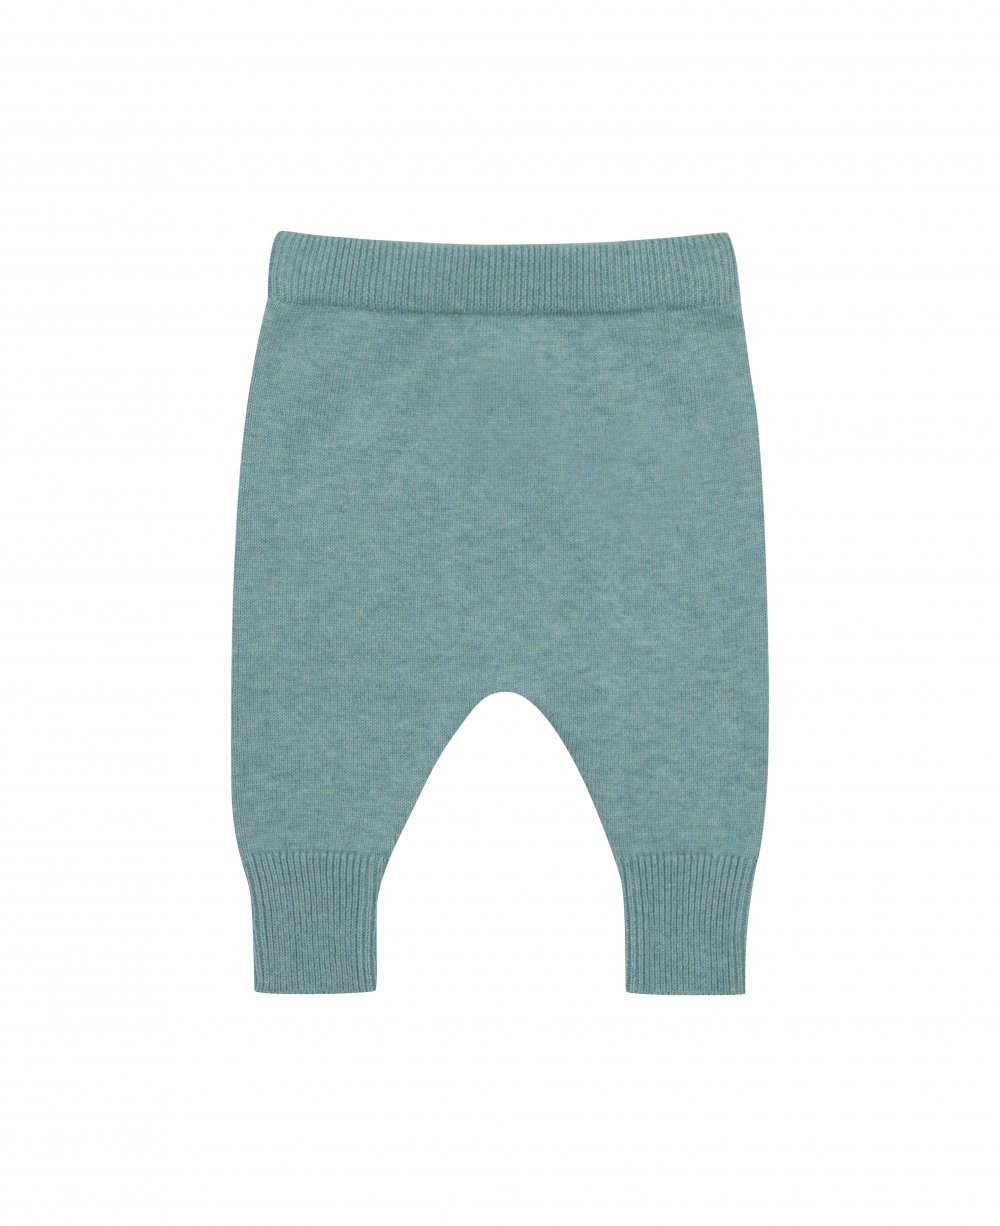 Pantaloni Harem Verde acqua per neonati in cotone biologico e lana